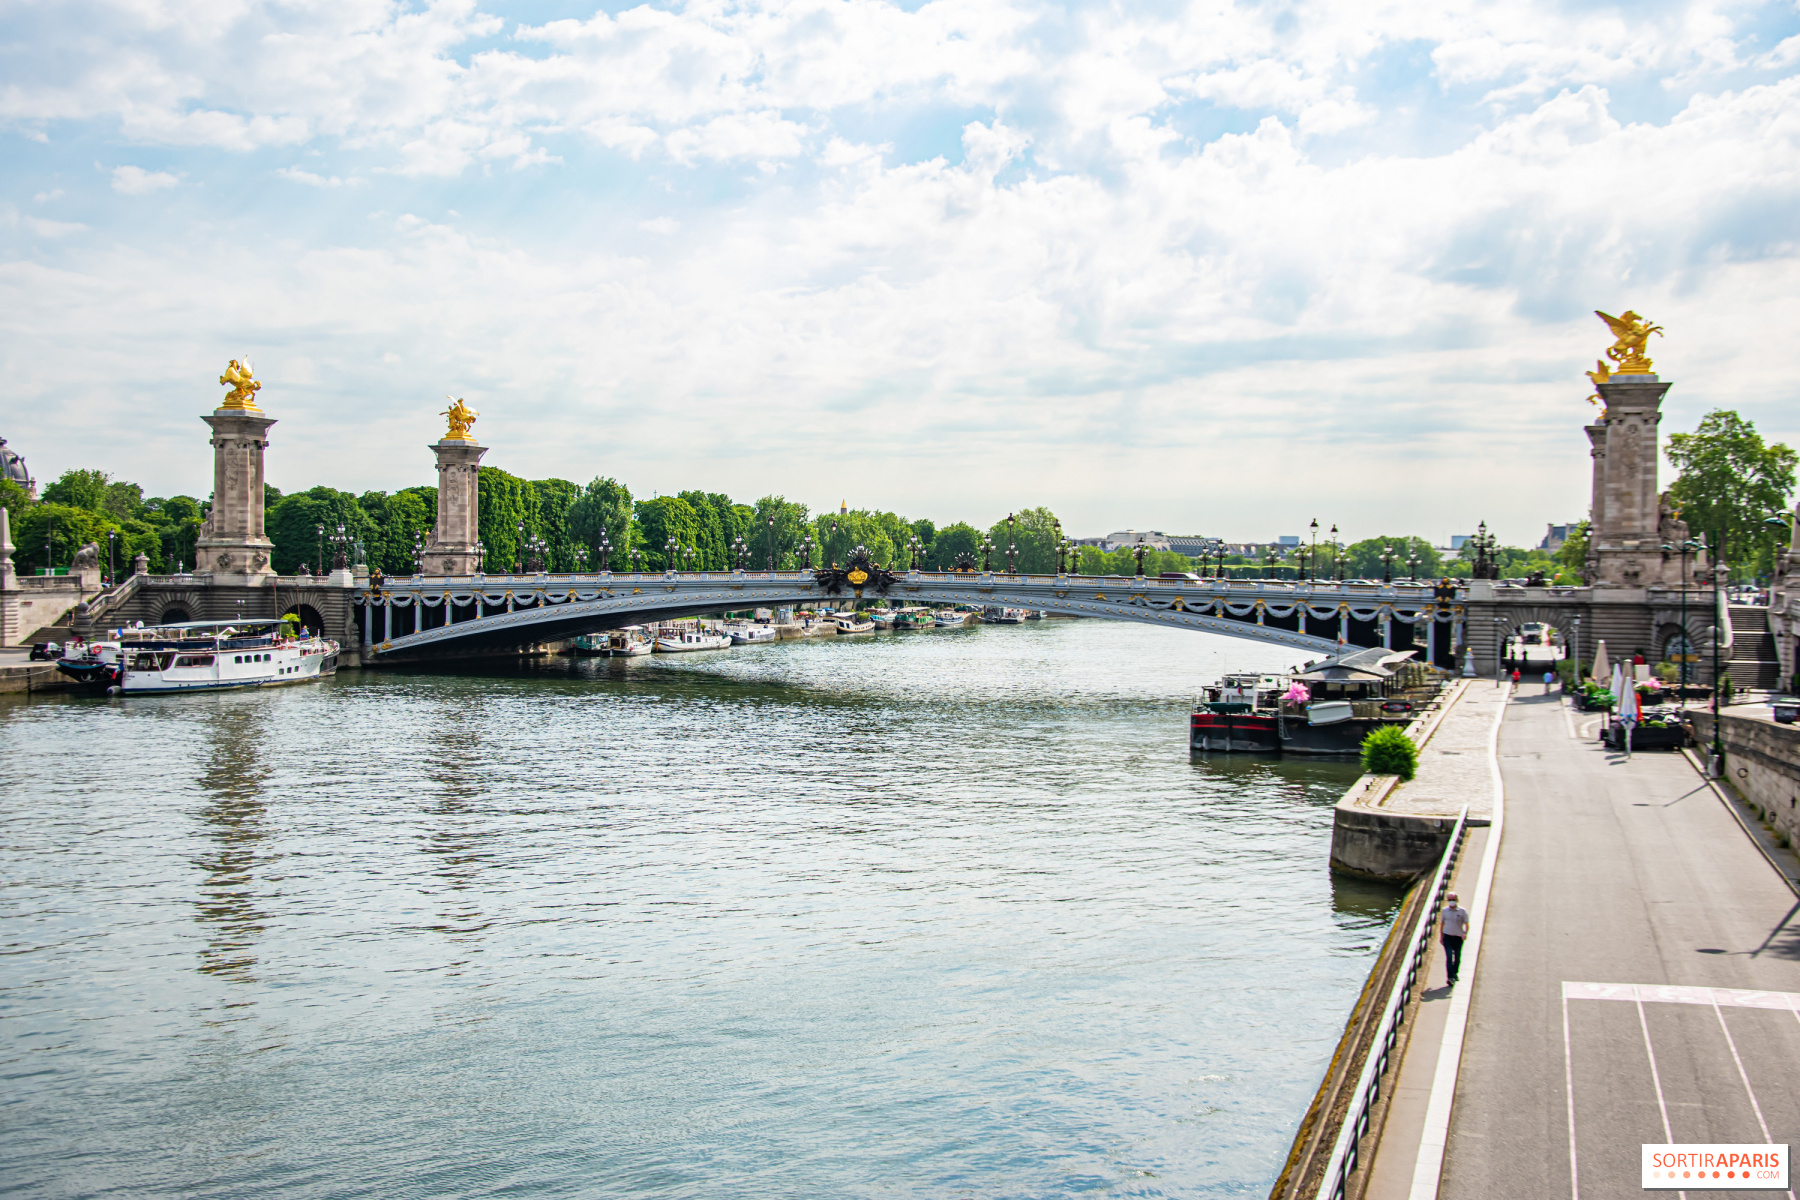 Paris 2024 : à un an des Jeux olympiques, première répétition grandeur  nature de la cérémonie d'ouverture sur la Seine